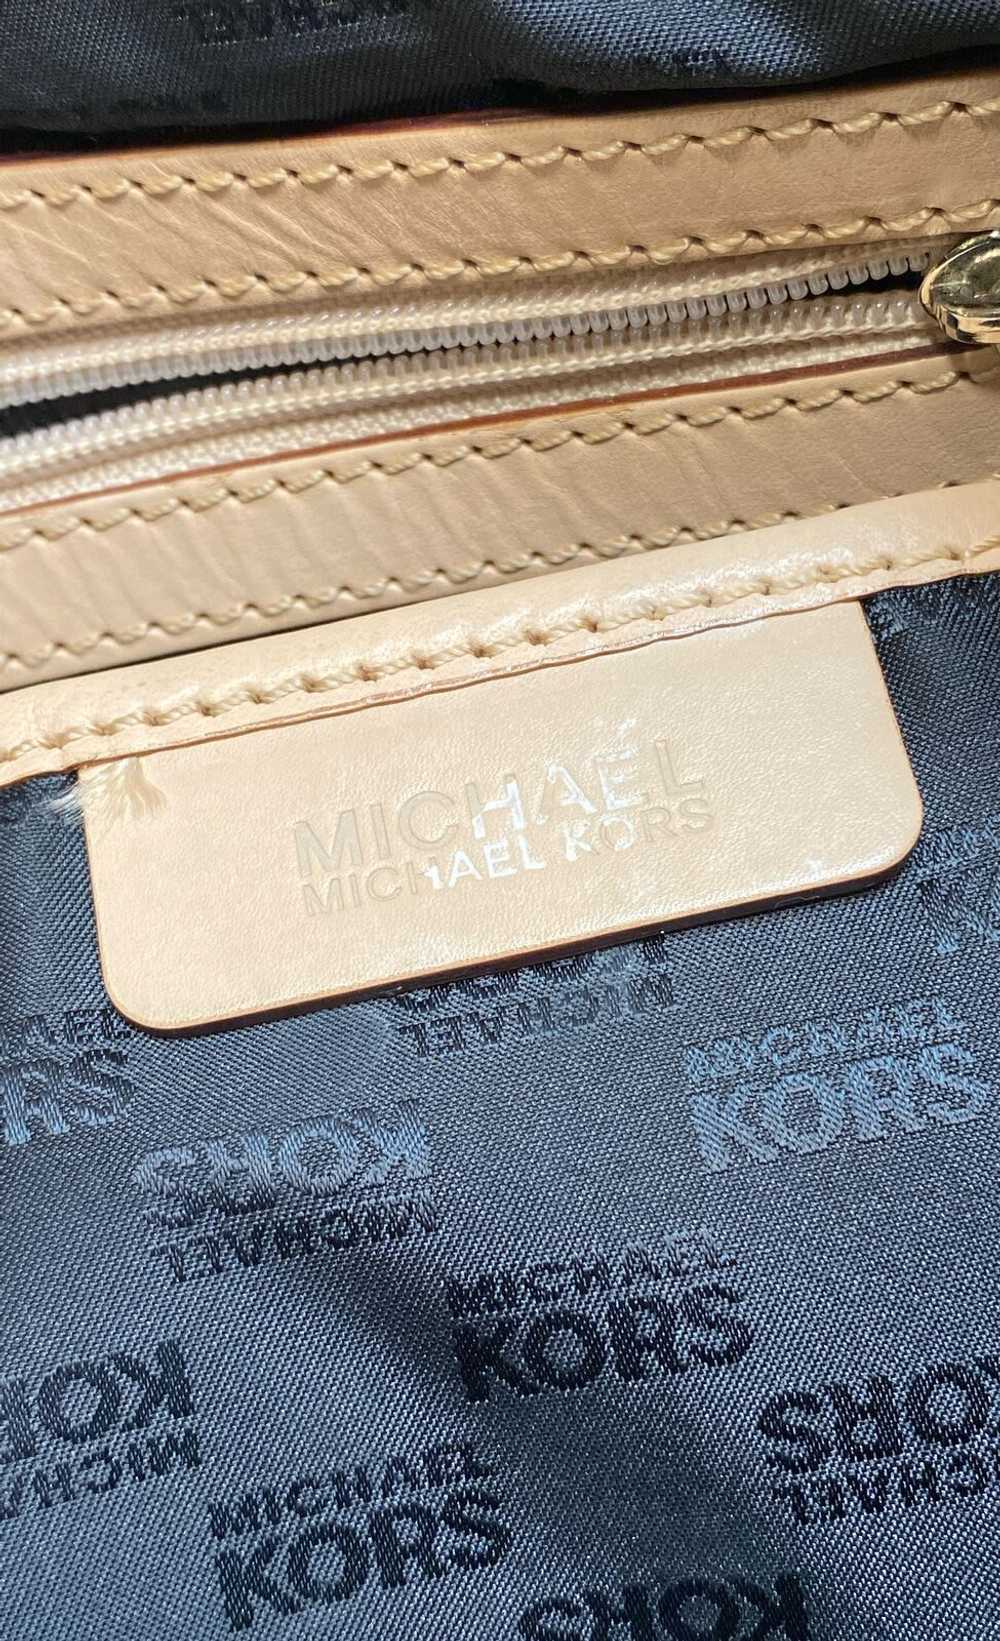 Michael Kors Pebbled Black Shoulder Bag - image 6